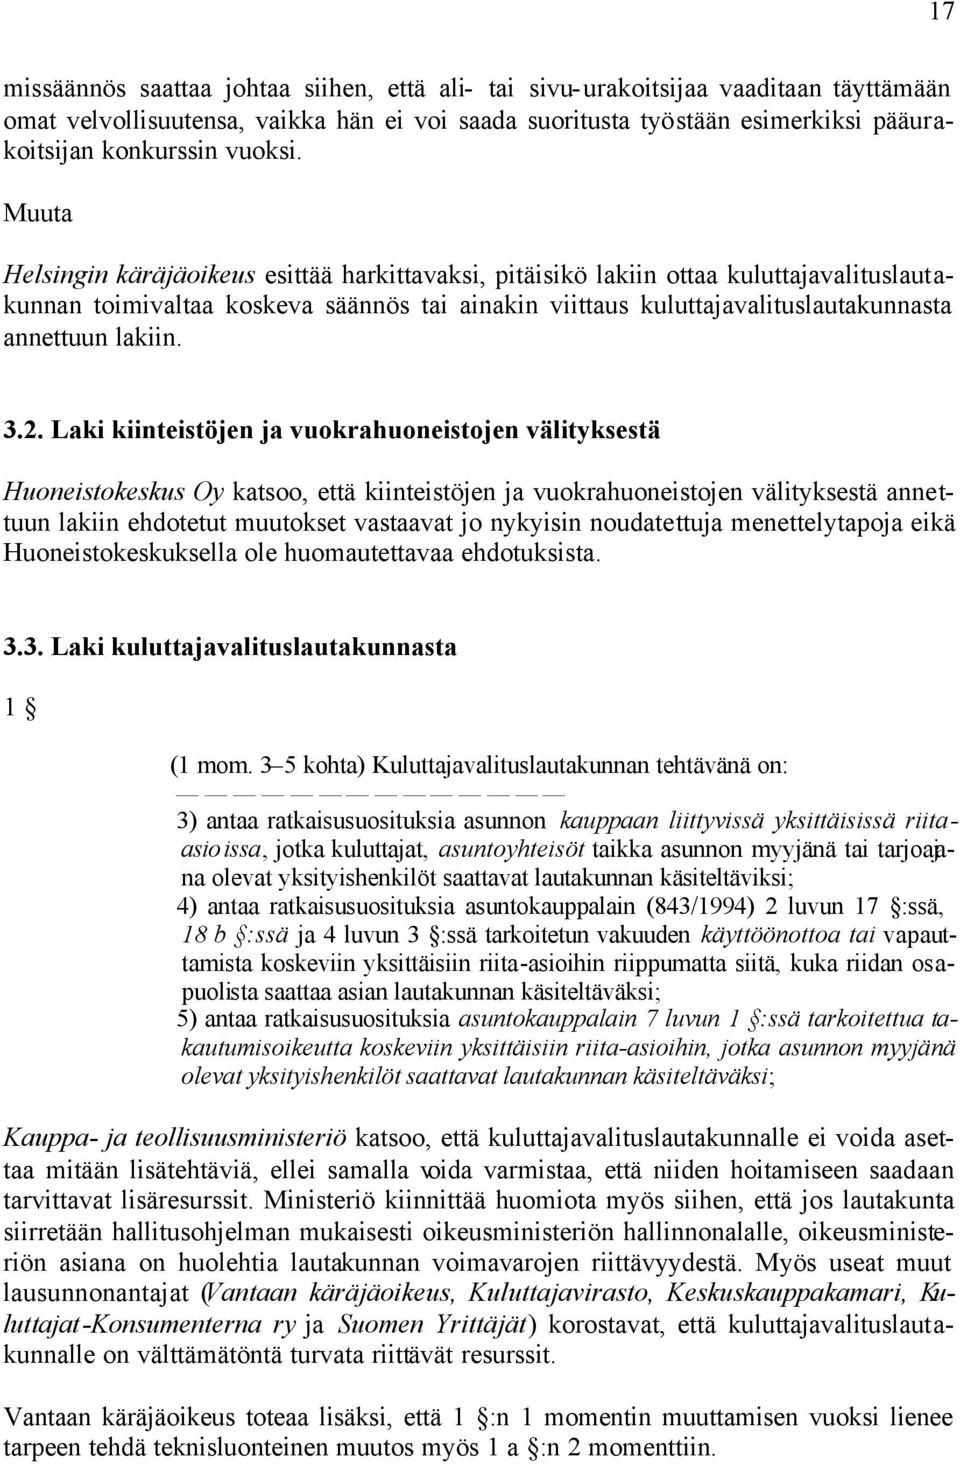 Muuta Helsingin käräjäoikeus esittää harkittavaksi, pitäisikö lakiin ottaa kuluttajavalituslautakunnan toimivaltaa koskeva säännös tai ainakin viittaus kuluttajavalituslautakunnasta annettuun lakiin.